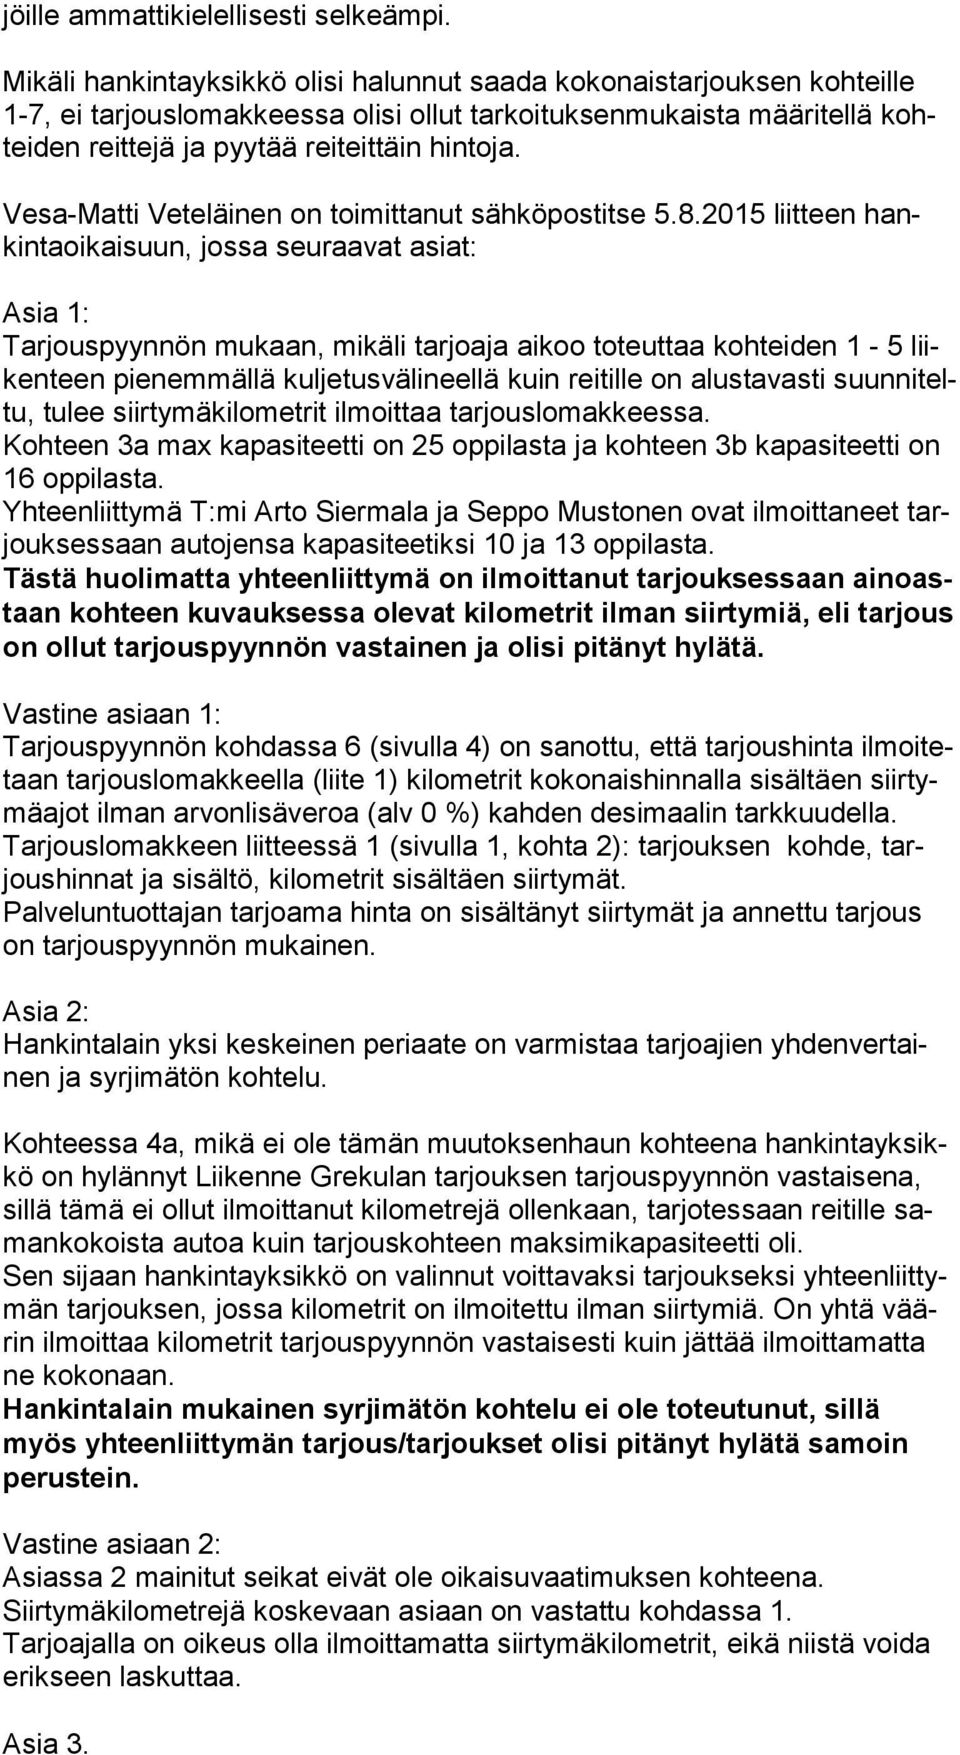 Vesa-Matti Veteläinen on toimittanut sähköpostitse 5.8.